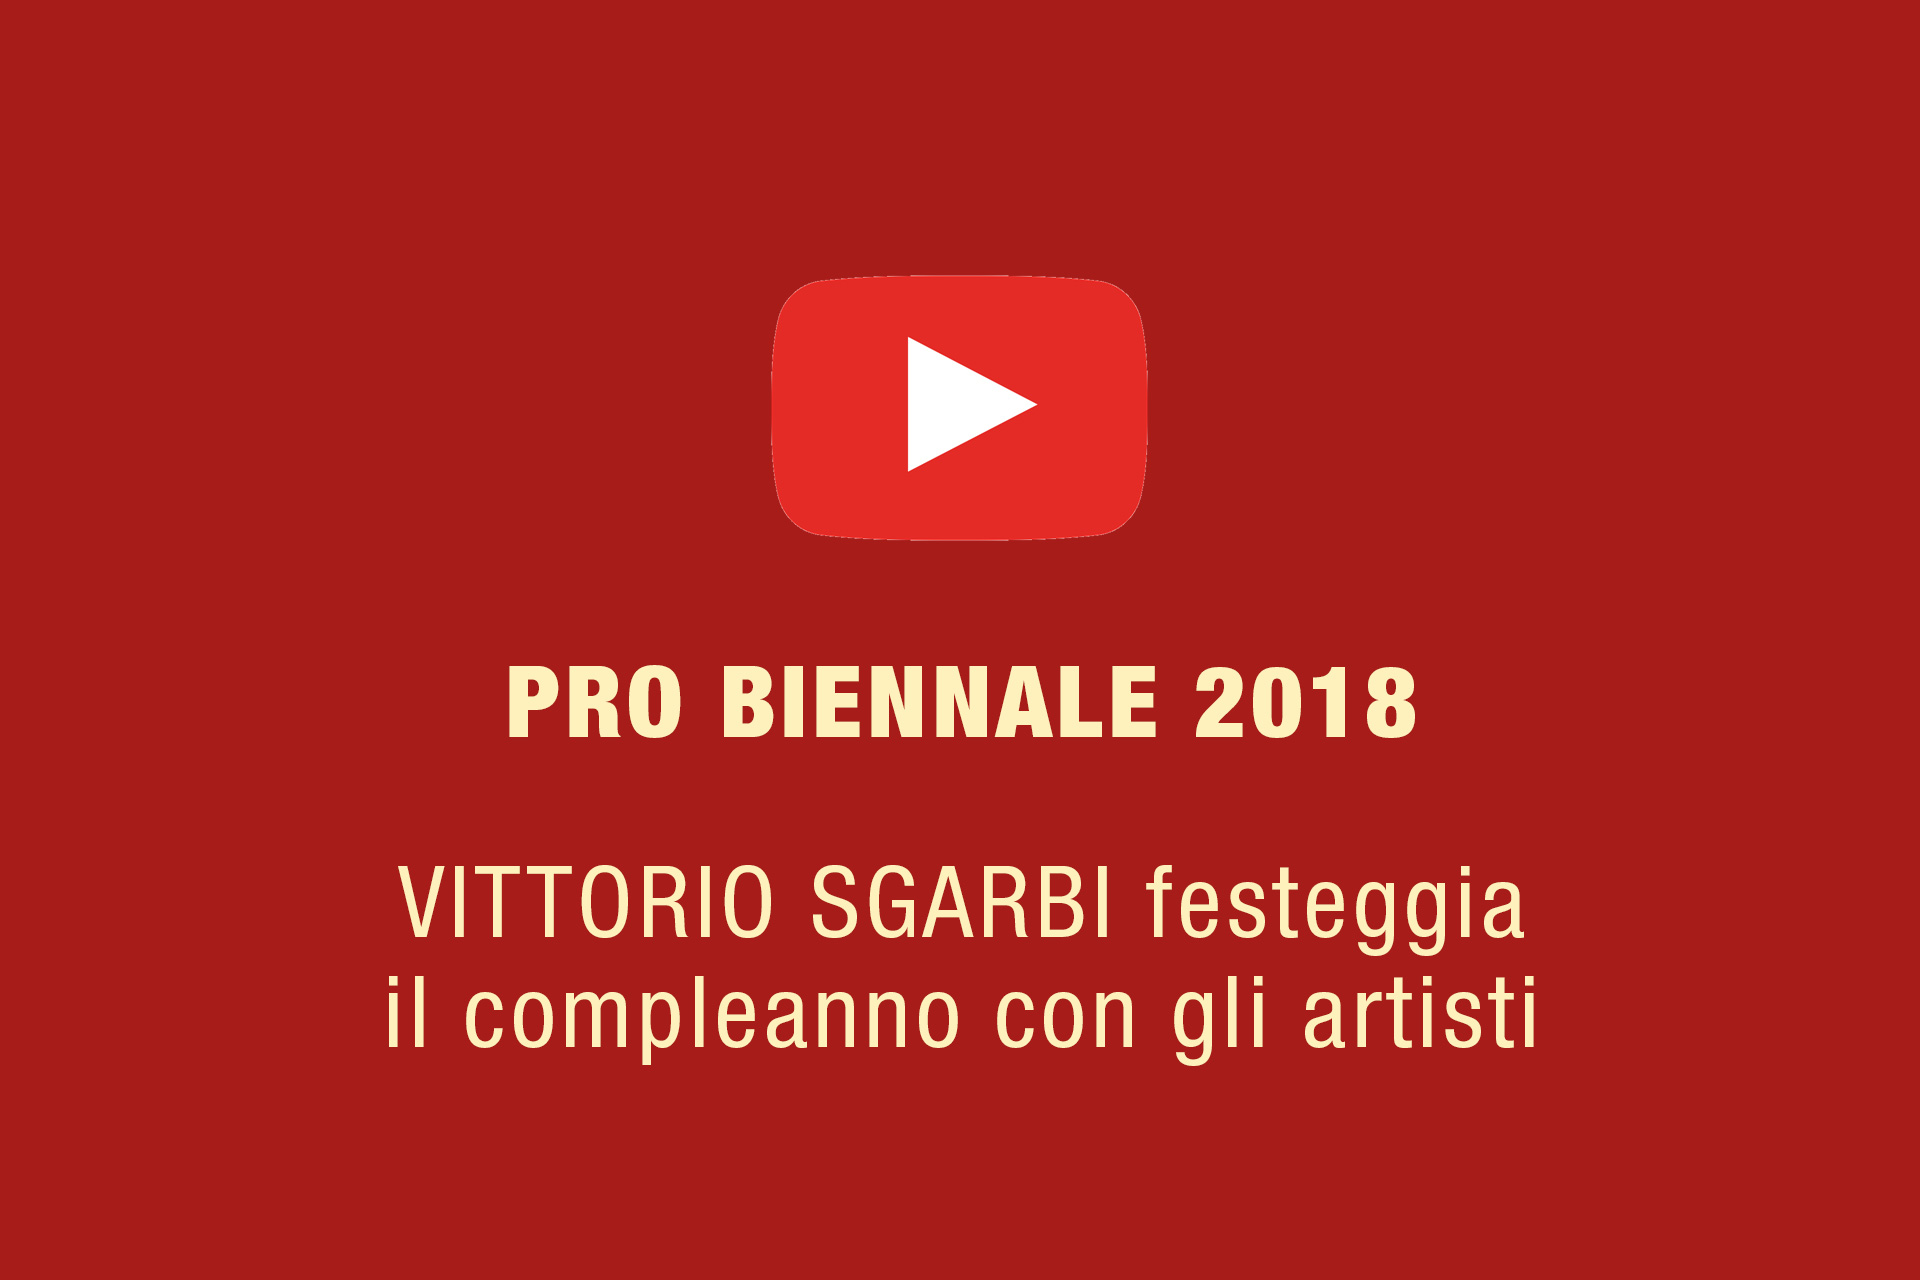 Pro Biennale 2018